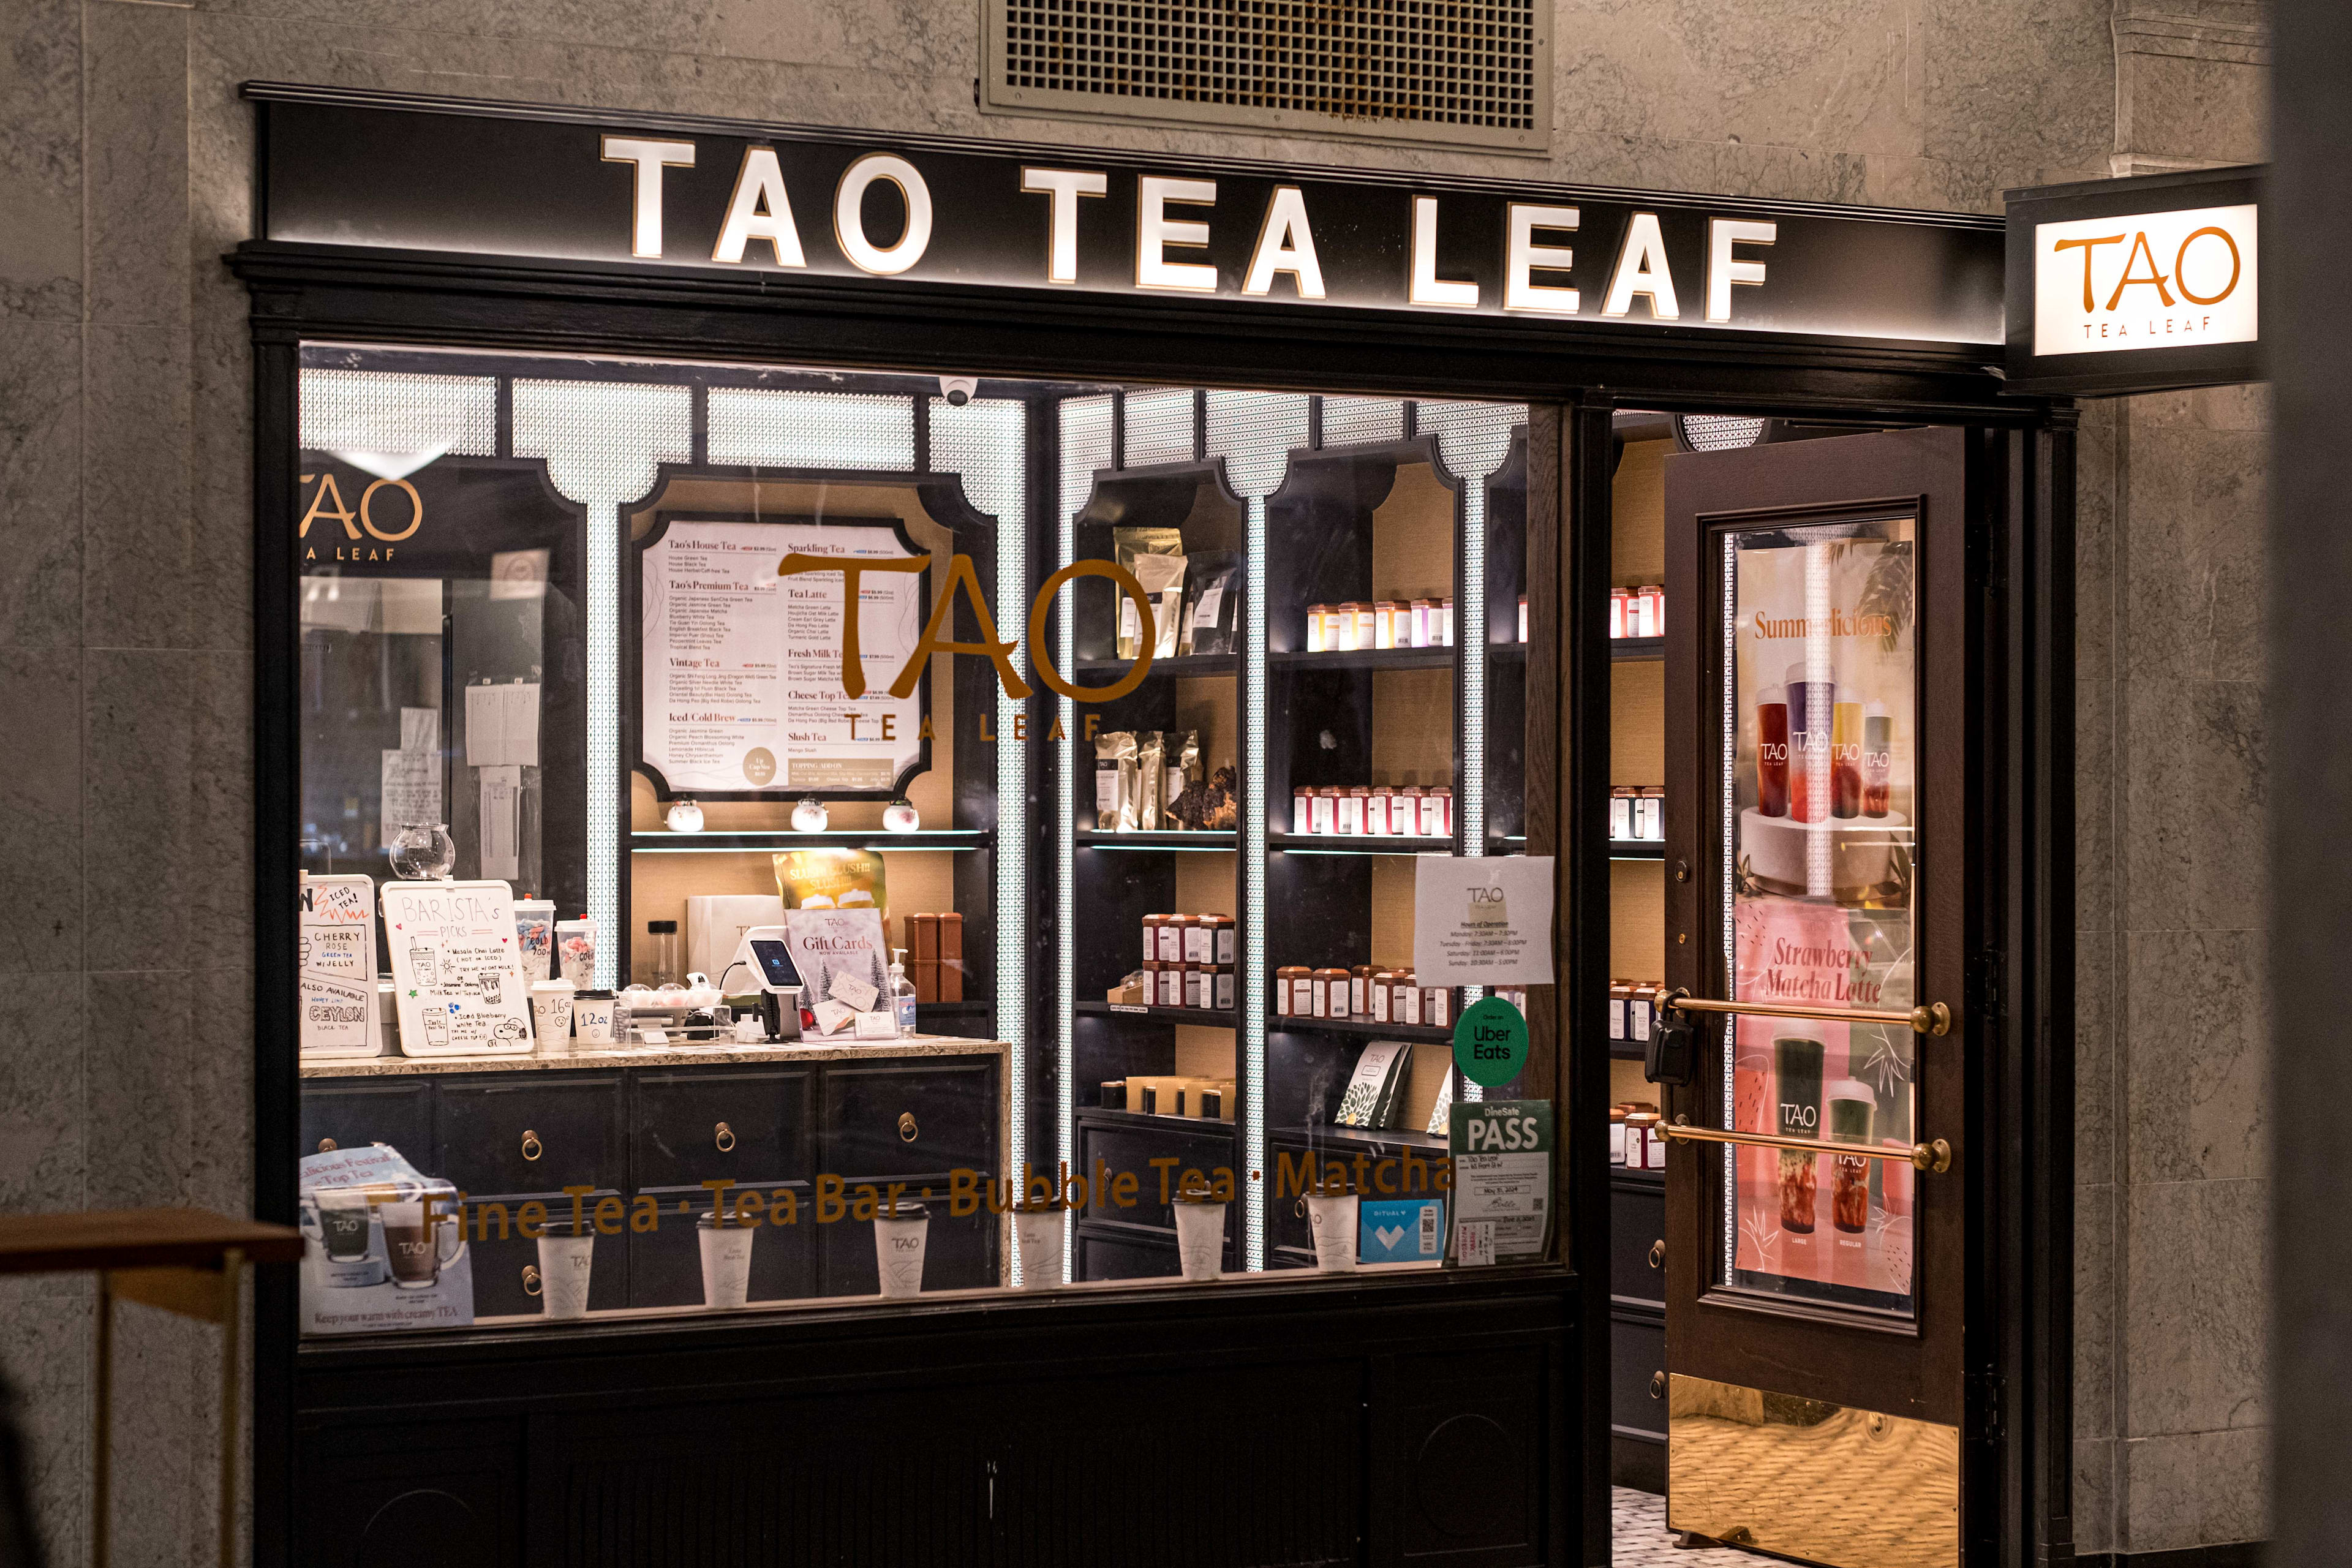 Tao Leaf Tea